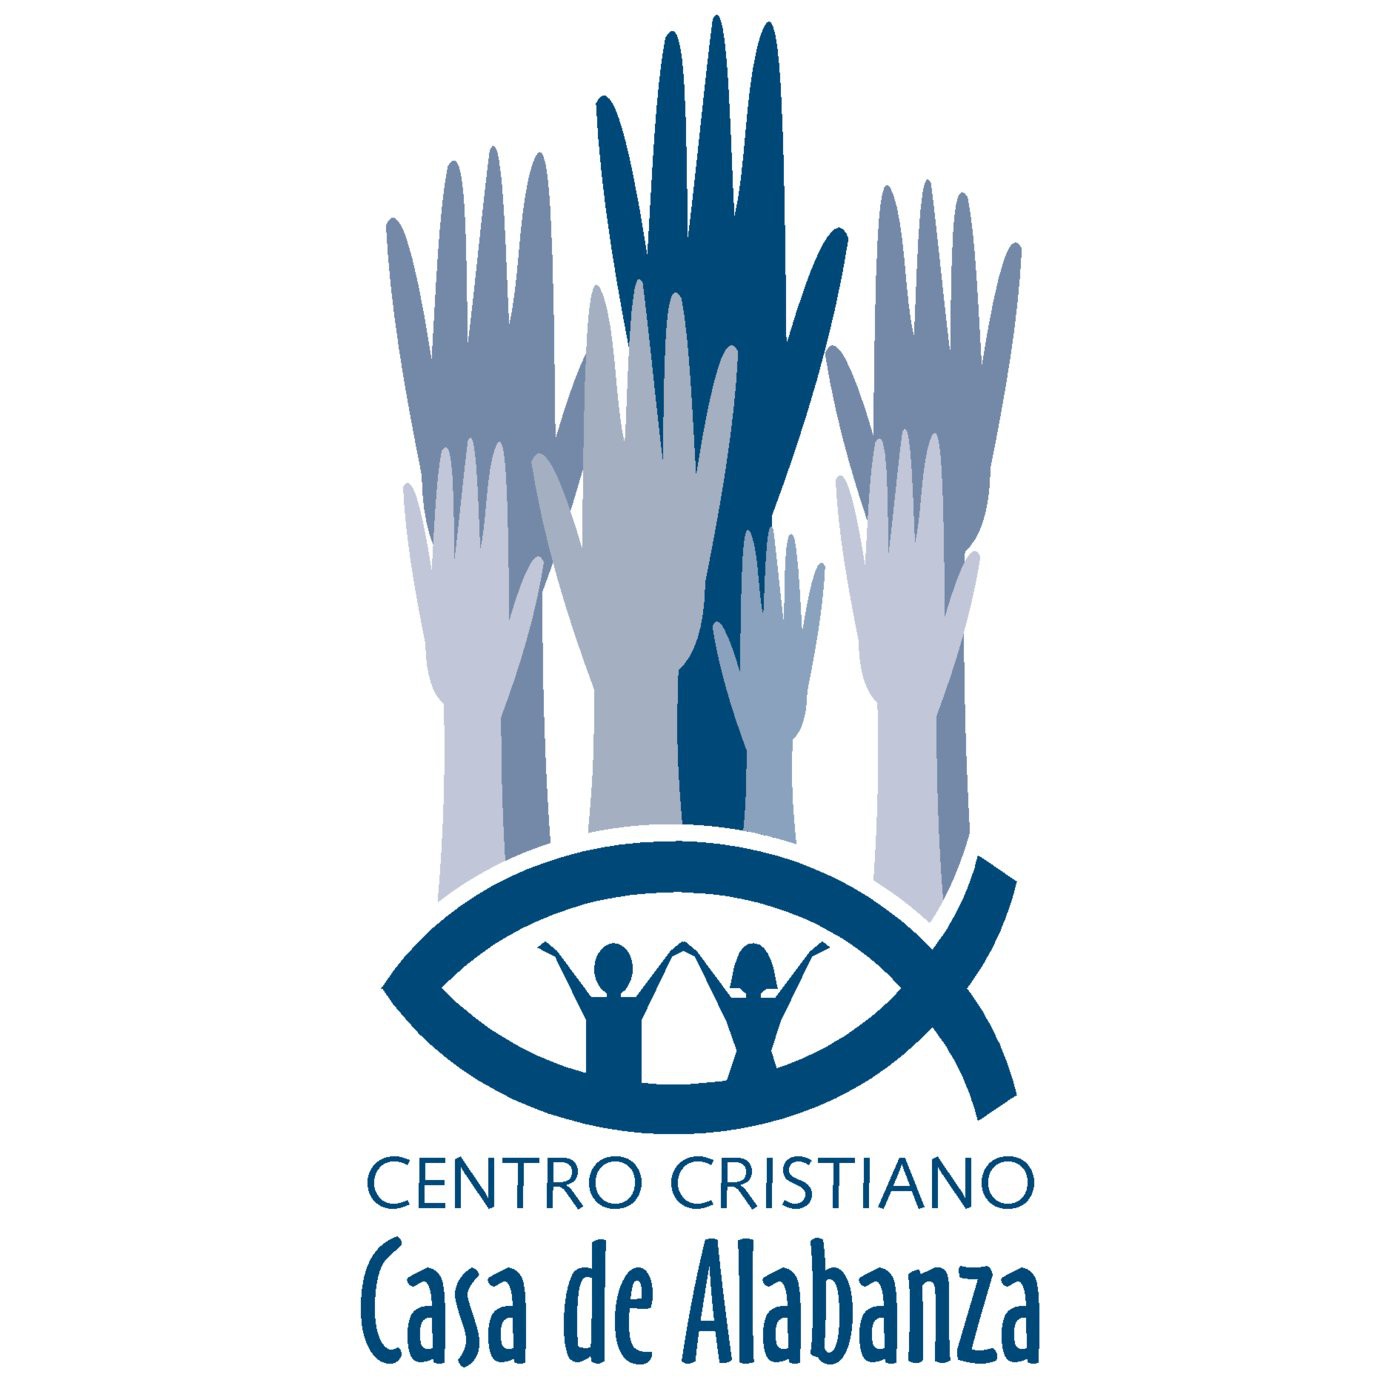 Centro Cristiano Casa de Alabanza